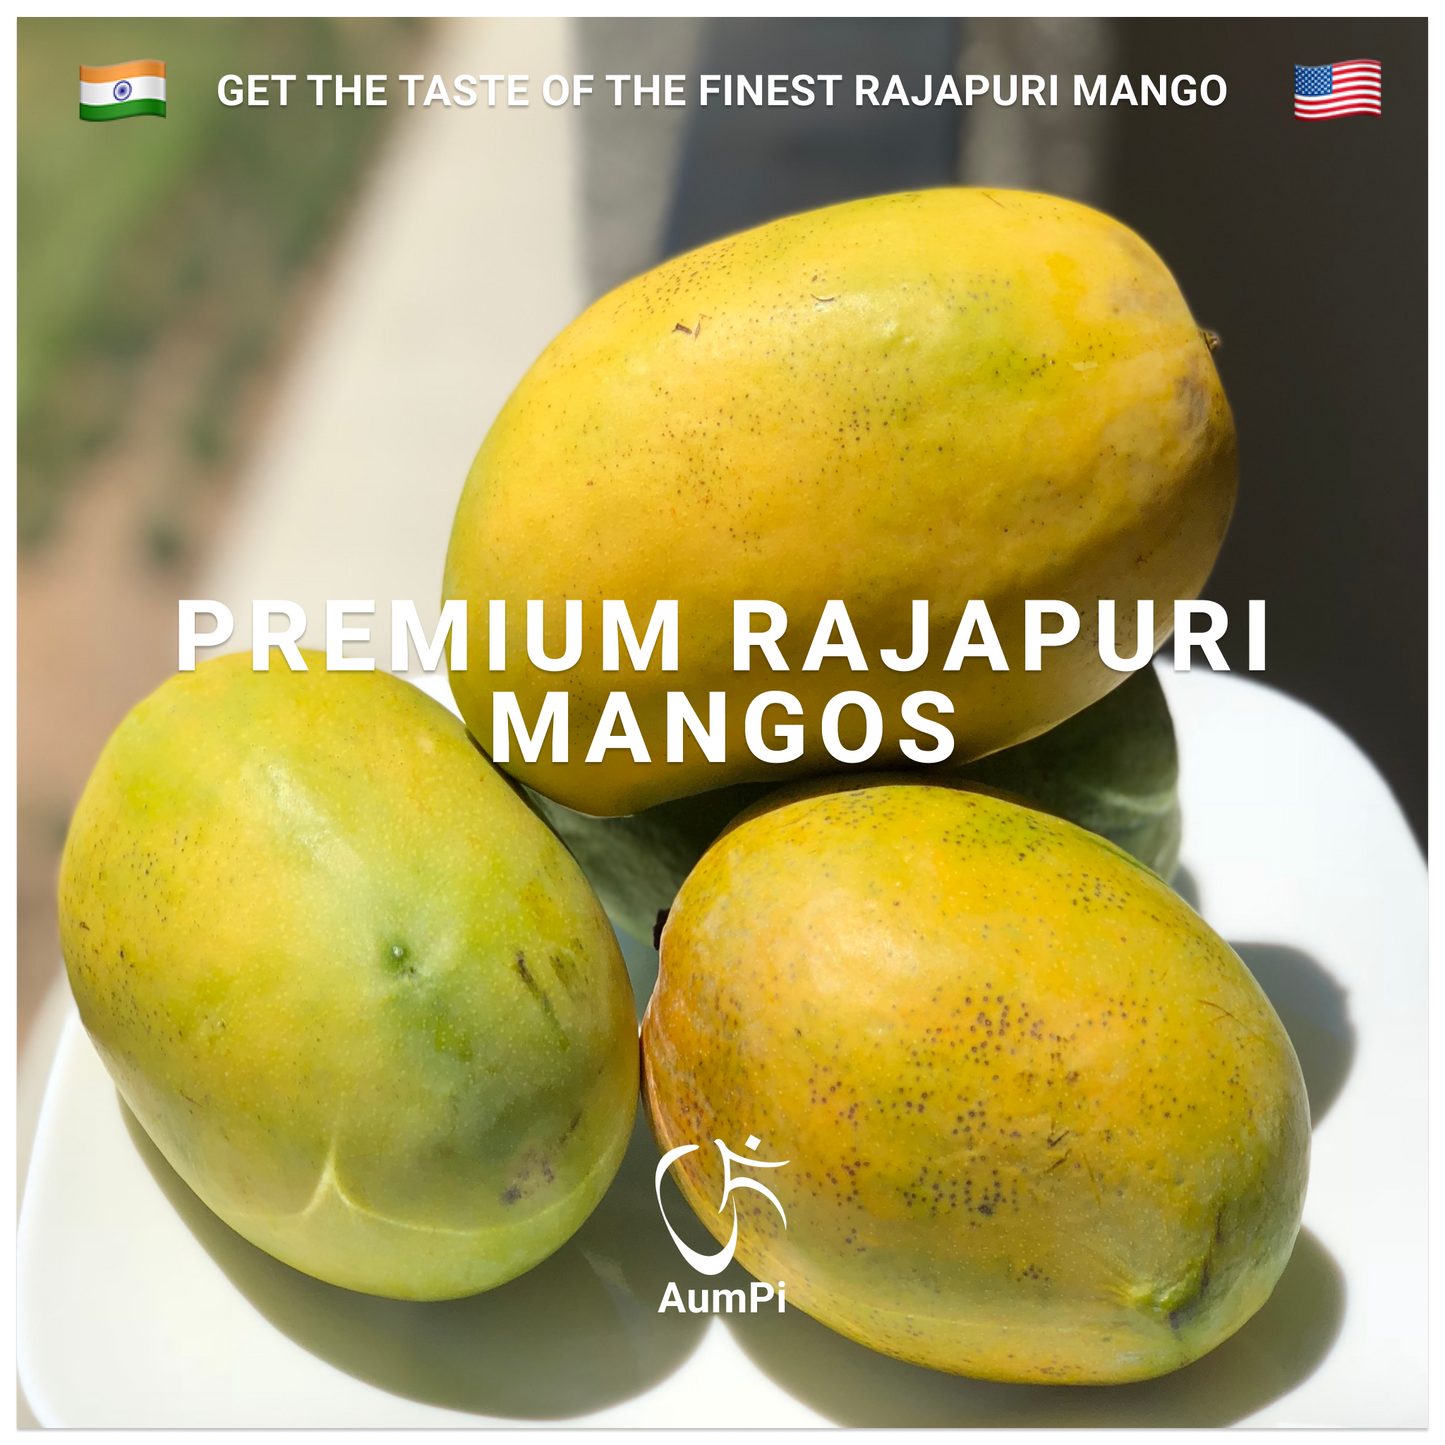 AumPI - Premium Rajapuri Mangos